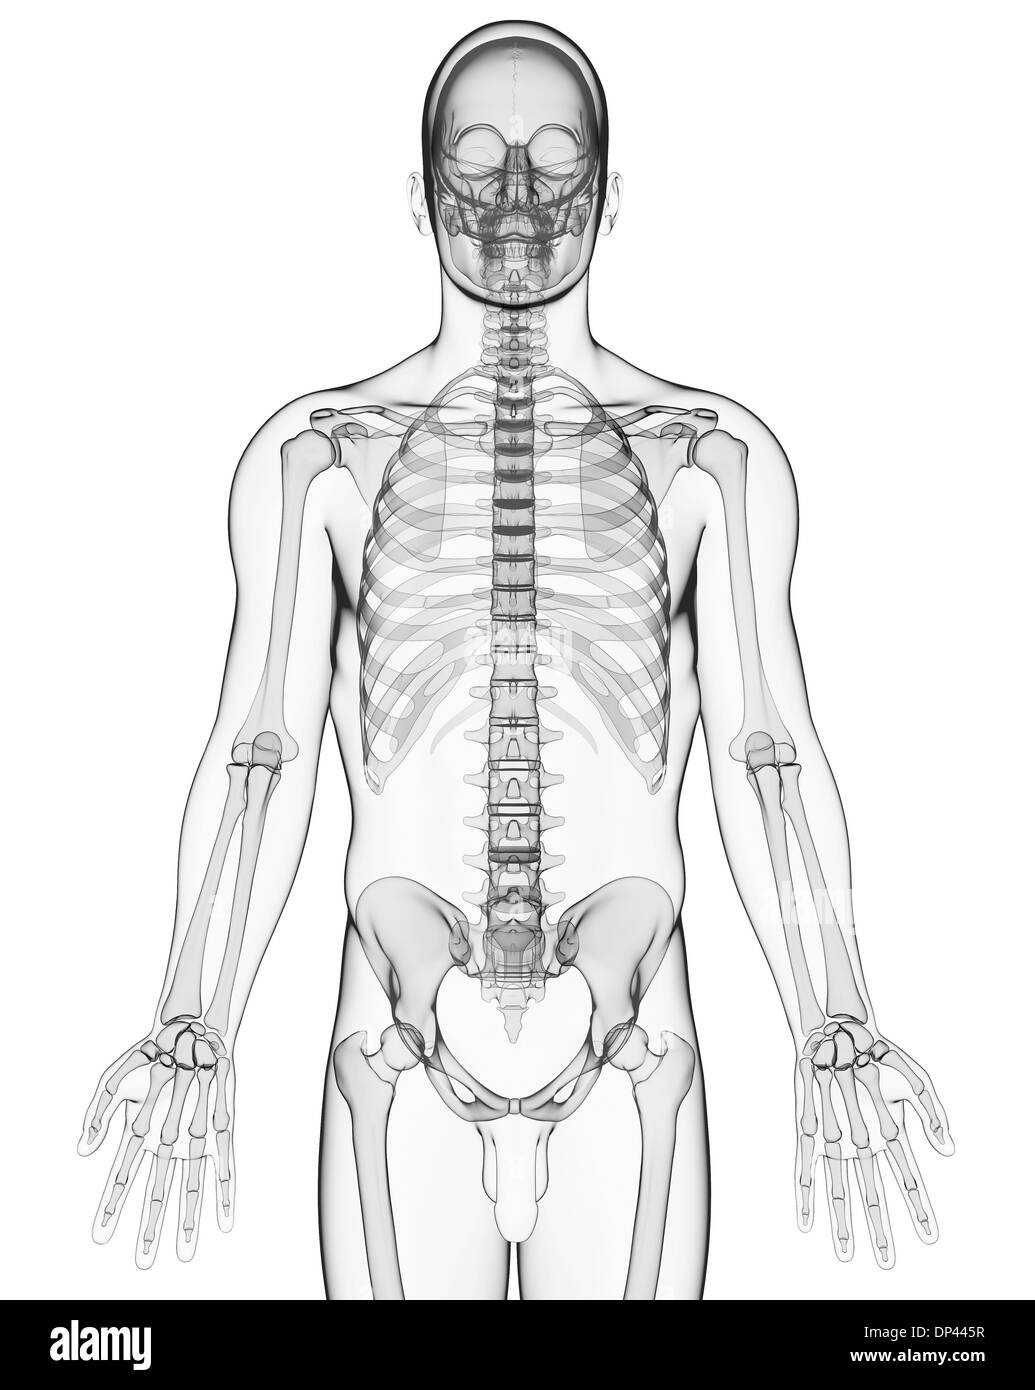 Human skeleton, artwork Stock Photo